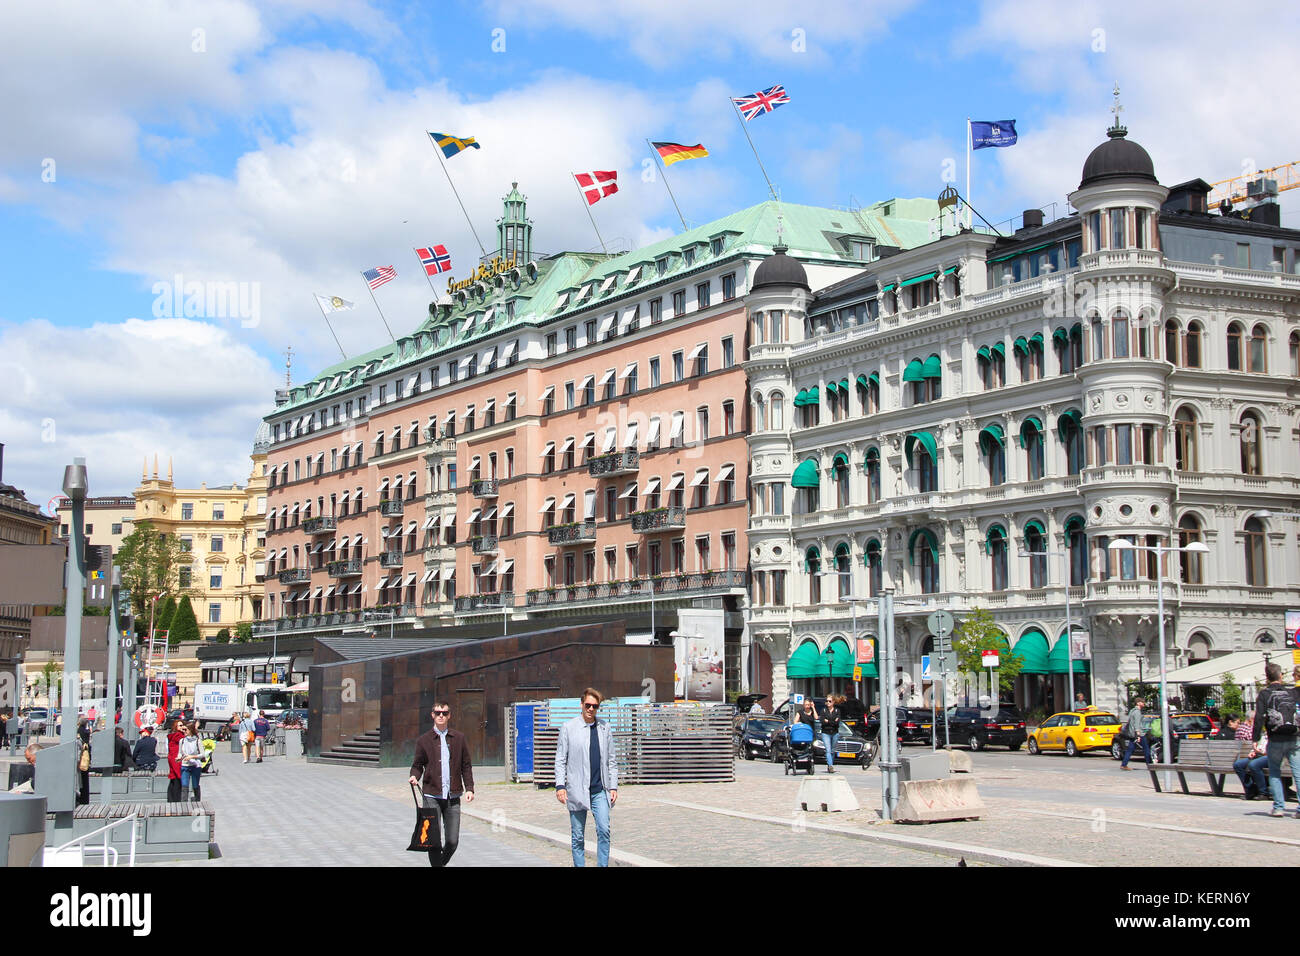 Vista dell'edificio del grand hotel di Stoccolma con bandiere di diversi paesi (Stati Uniti d'America, Finlandia, Norvegia, Svezia, Danimarca, Germania, Gran Bretagna) Foto Stock